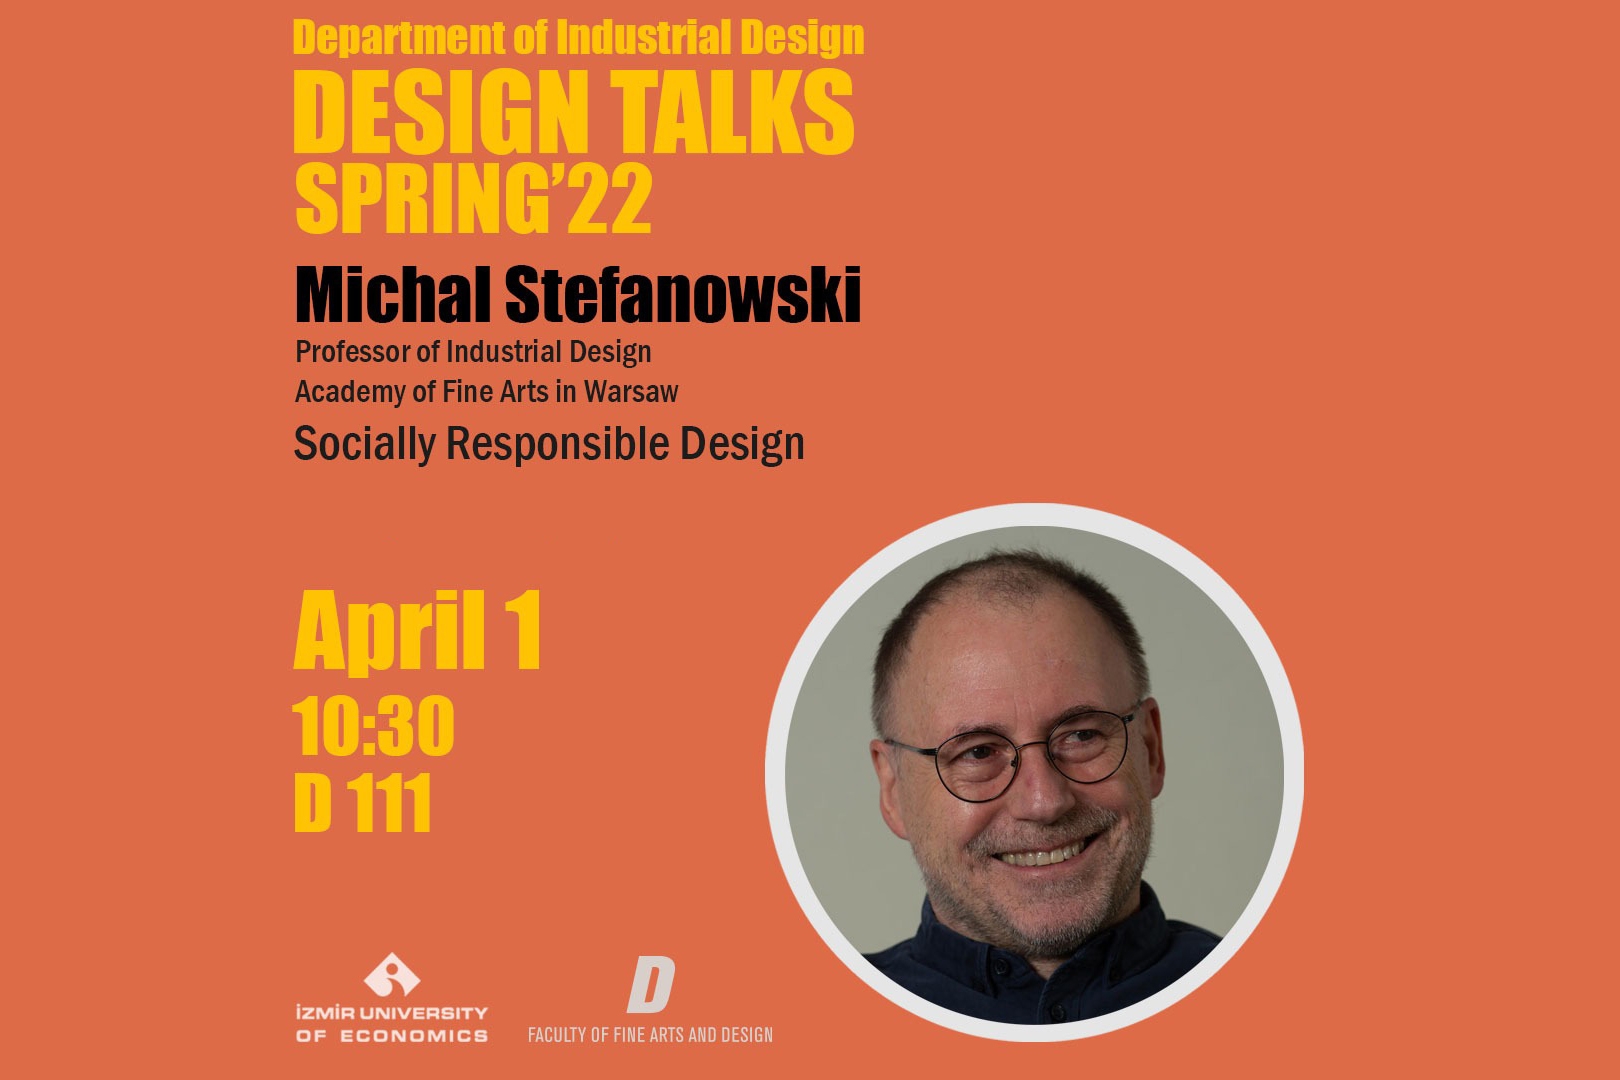 Tasarım Konuşmaları Bahar '22 Michał Stefanowski ile başlıyor